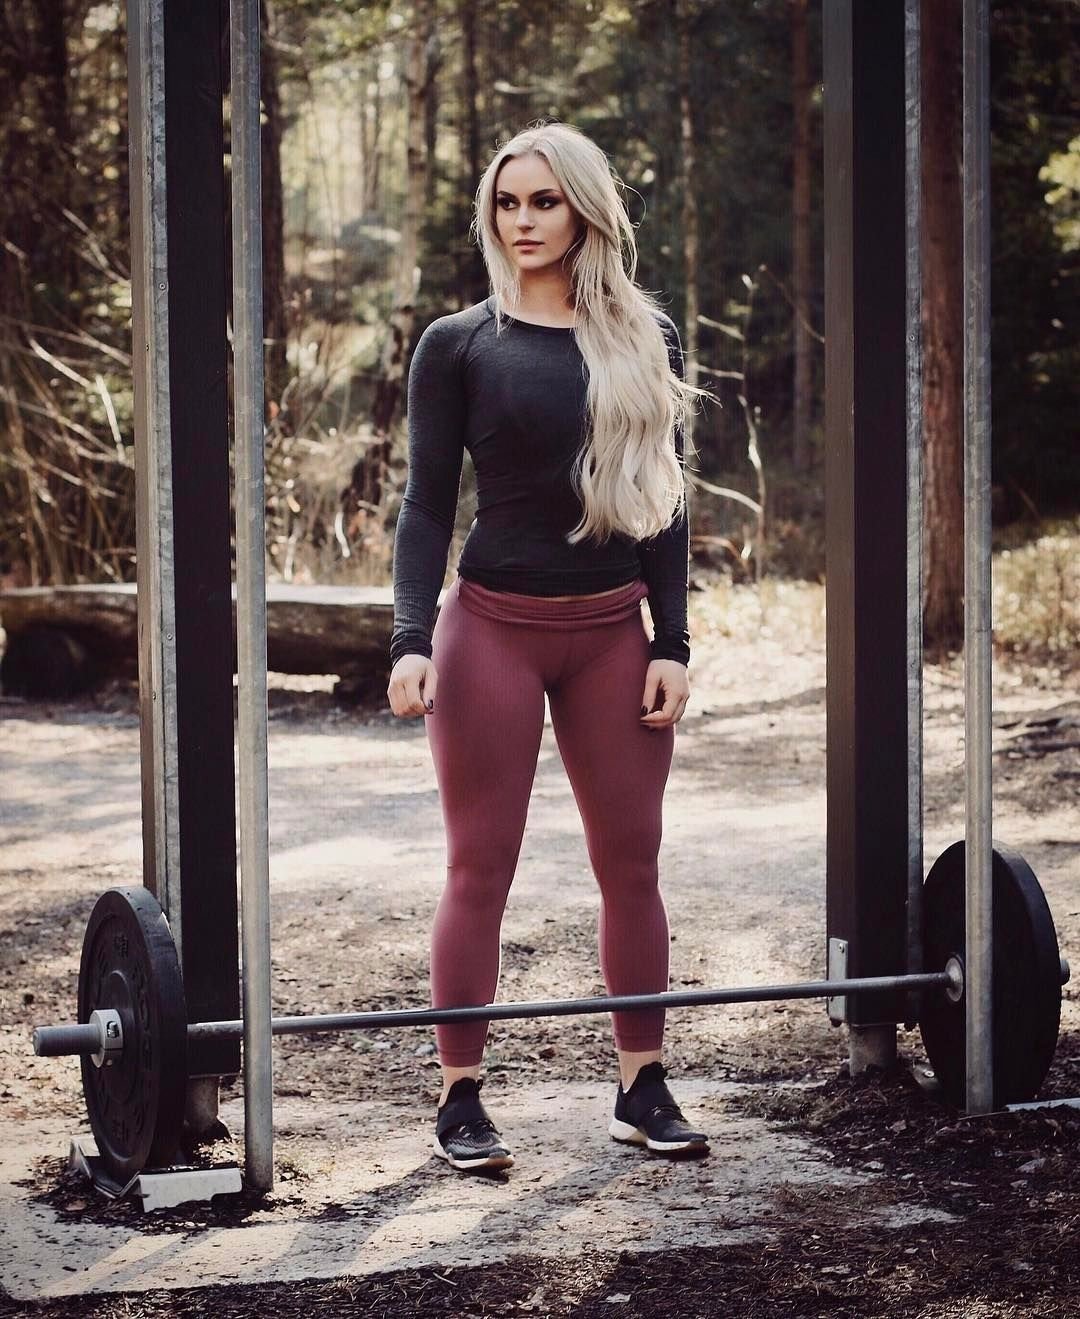 Анна Нистром — шведская фитнес-модель, которая создала себе идеальную спортивную фигуру благодаря правильному питанию и спорту